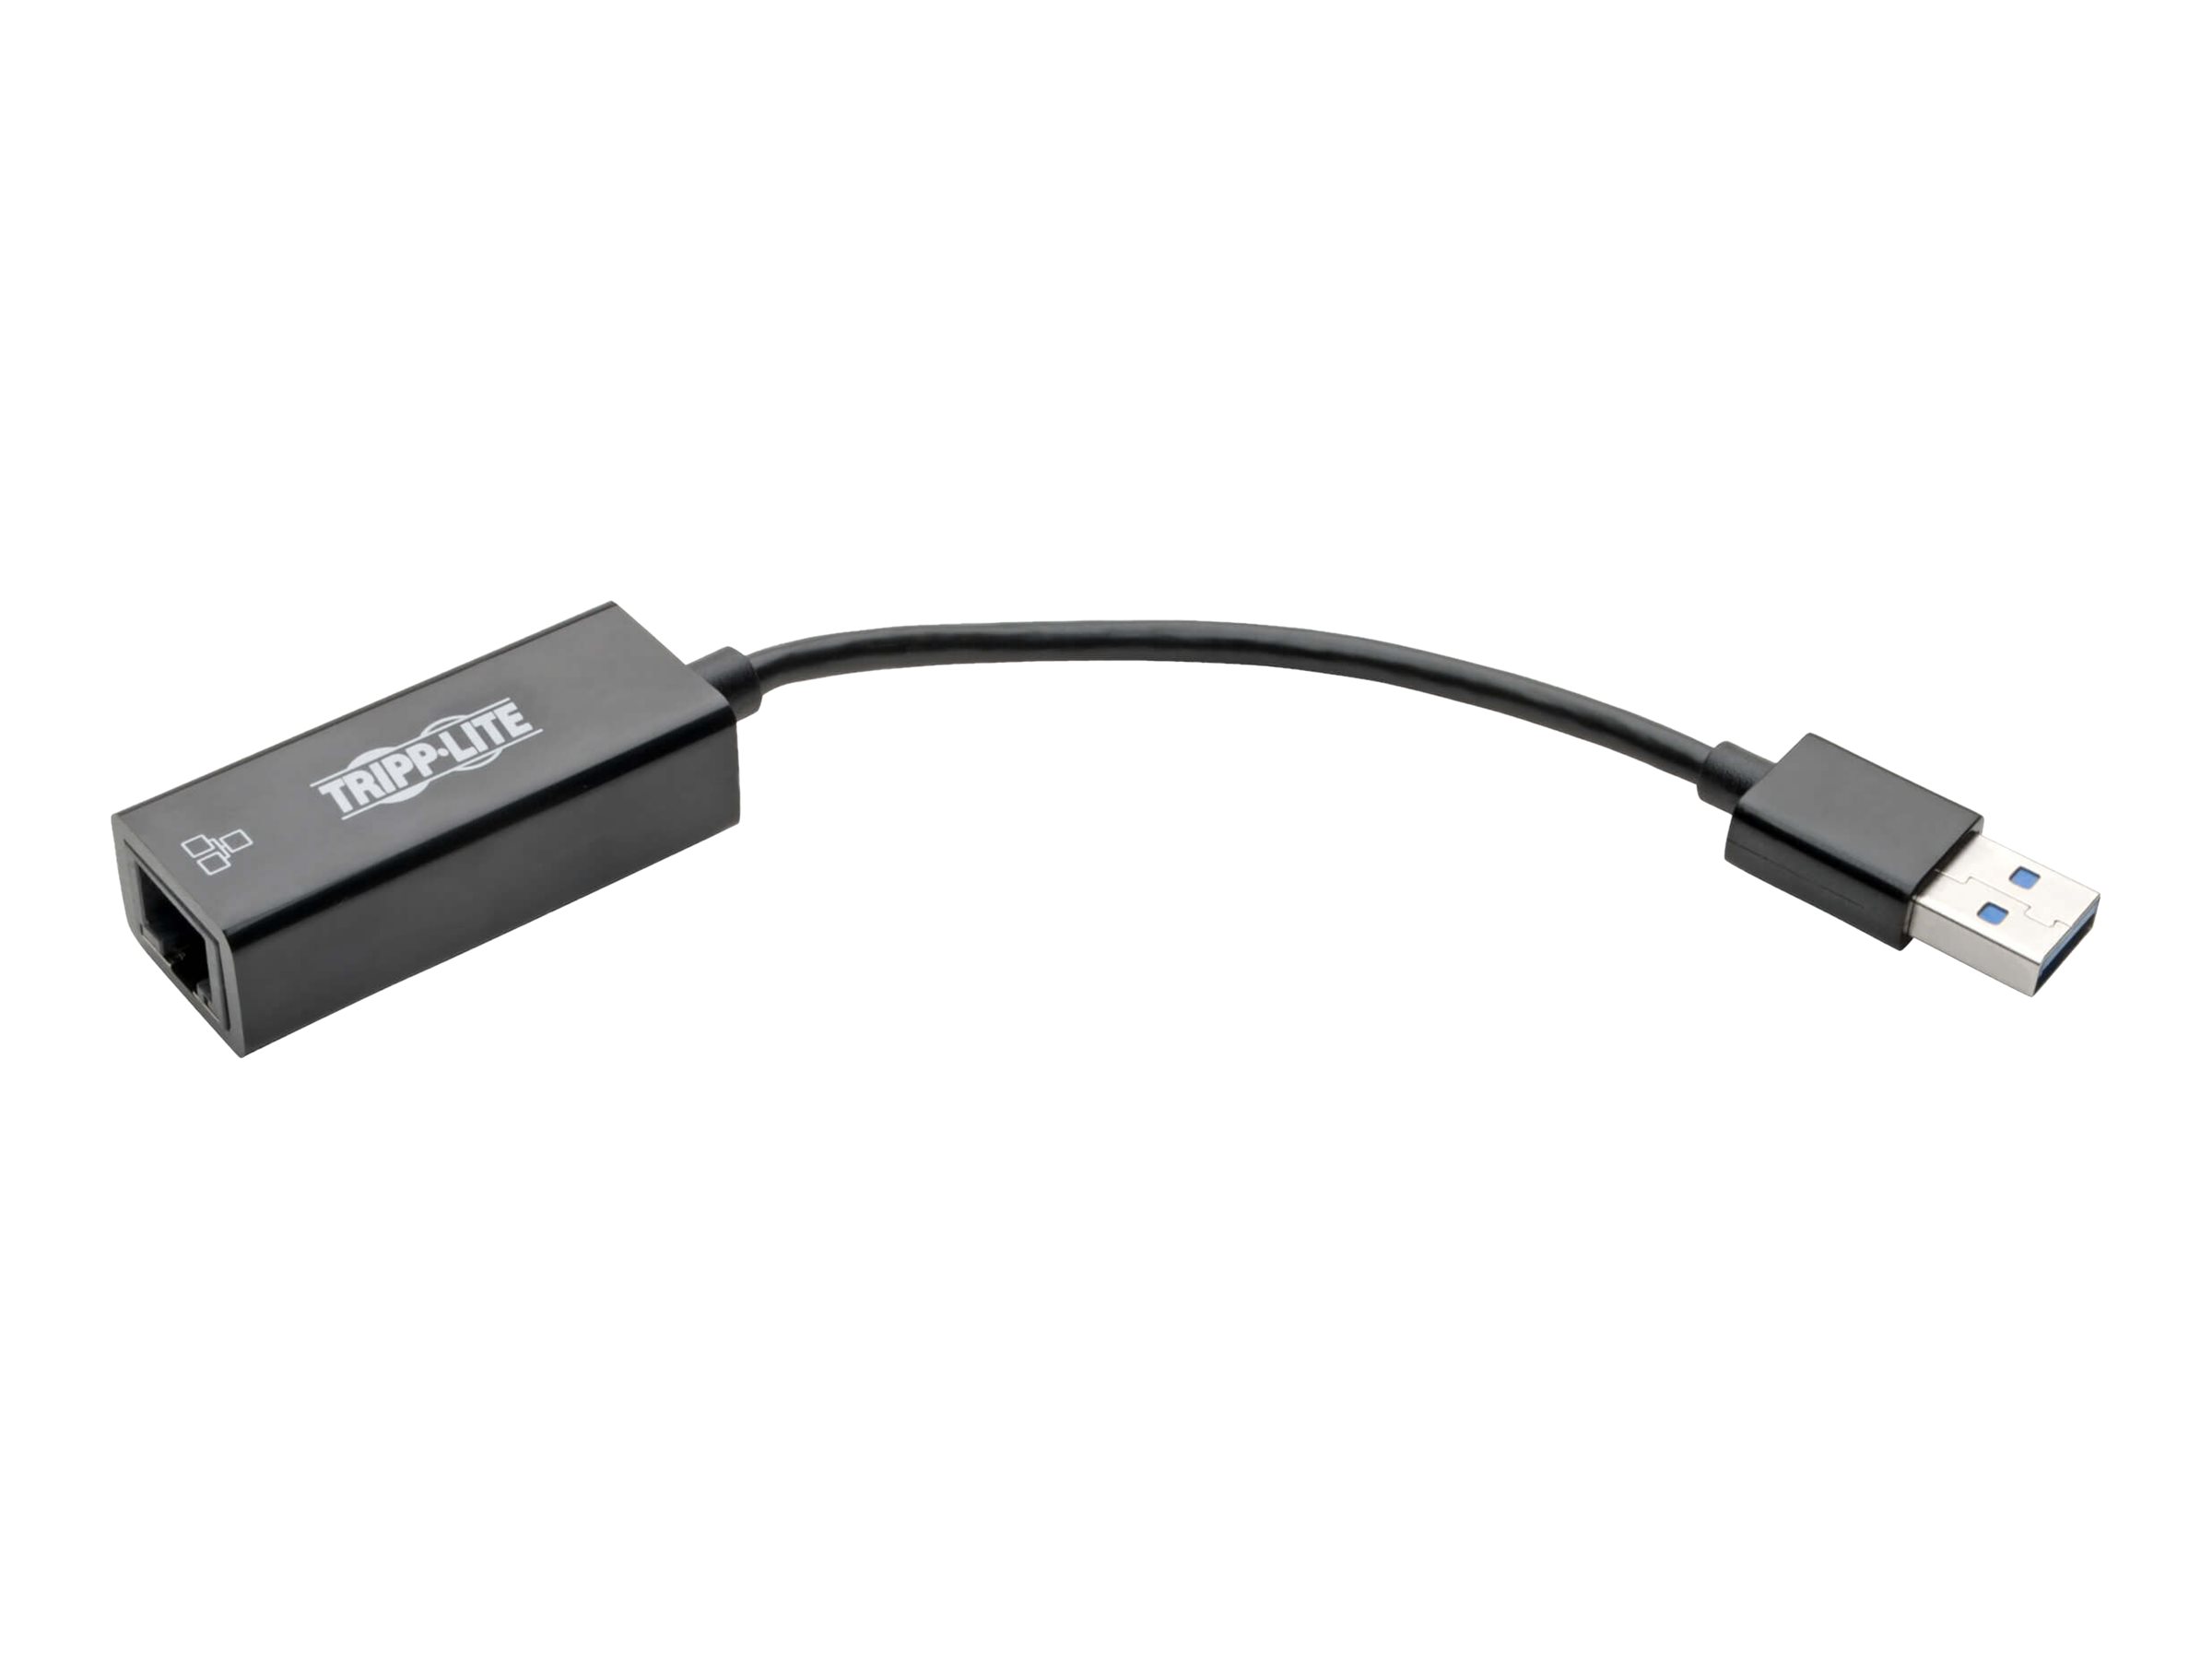 Tripp Lite USB 3.0 SuperSpeed to Gigabit Ethernet Adapter RJ45 10/100/1000 Mbps - Adaptateur réseau - USB 3.0 - Gigabit Ethernet - noir - U336-000-R - Cartes réseau